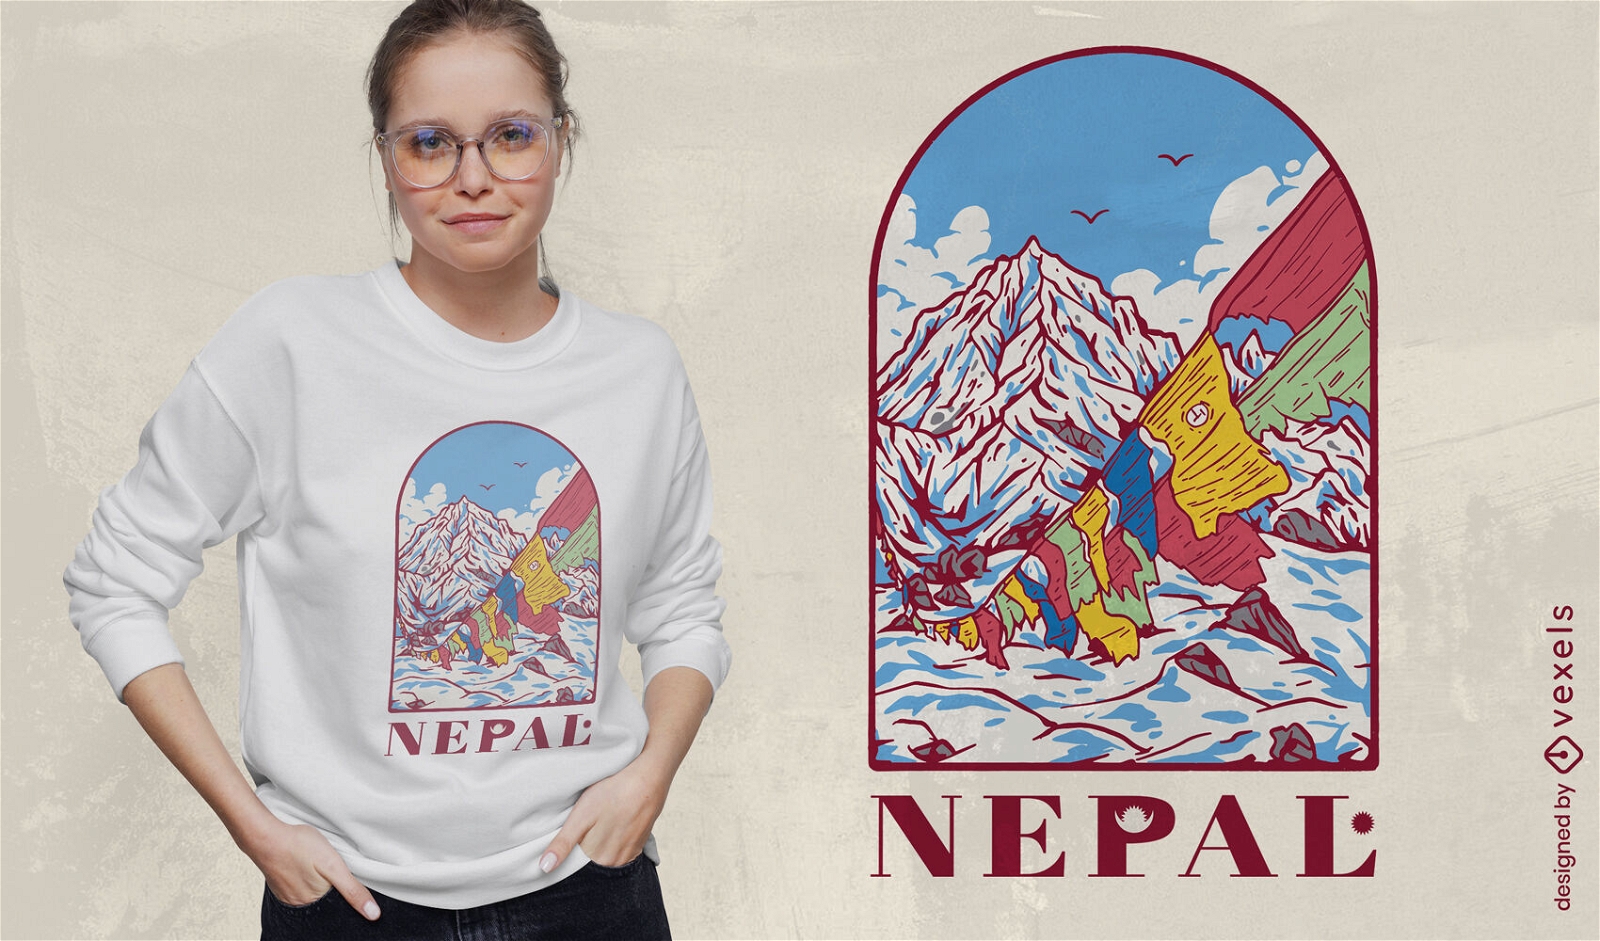 Himalaya-Berg-T-Shirt-Design